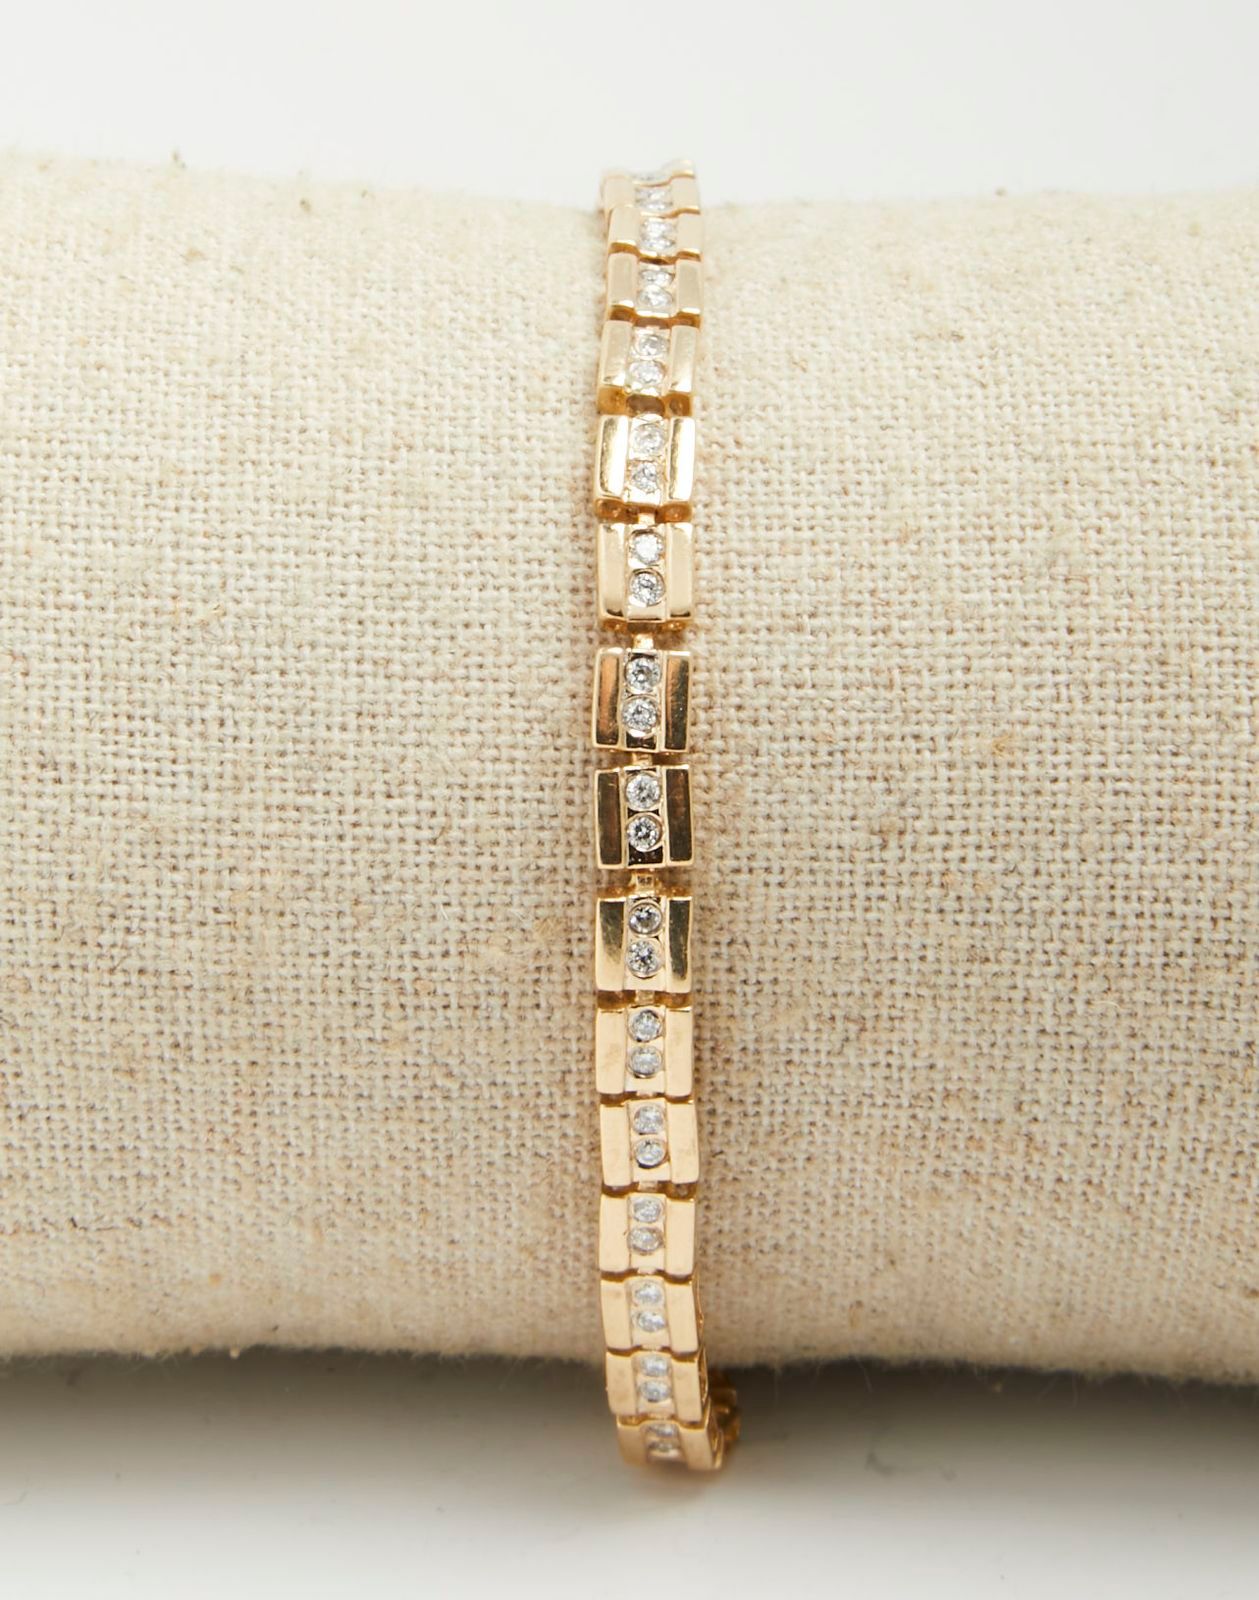 Null 324 Flussarmband aus Gelbgold mit65 Diamanten im Brillantschliff, 19,5 cm.
&hellip;